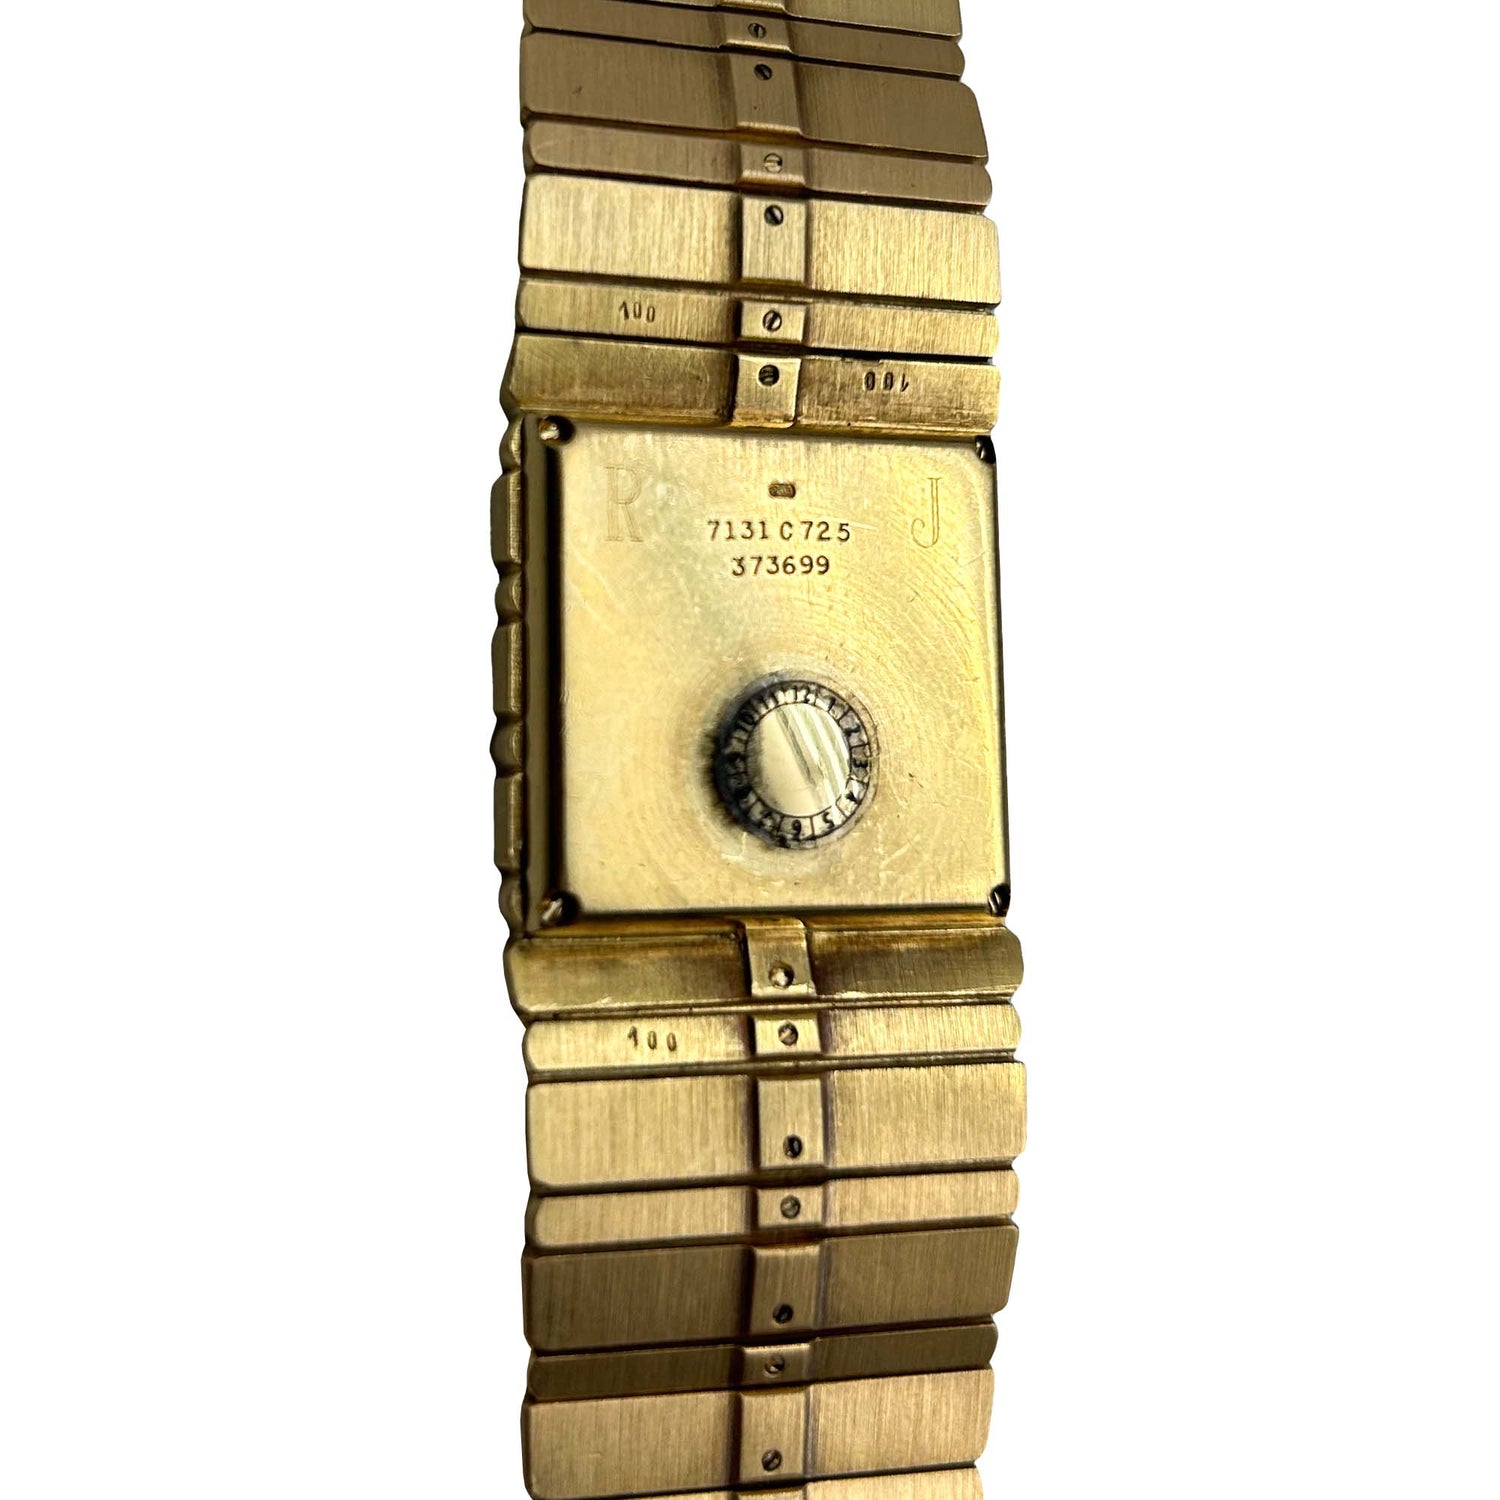 18K Piaget Polo Diamond Wristwatch Back